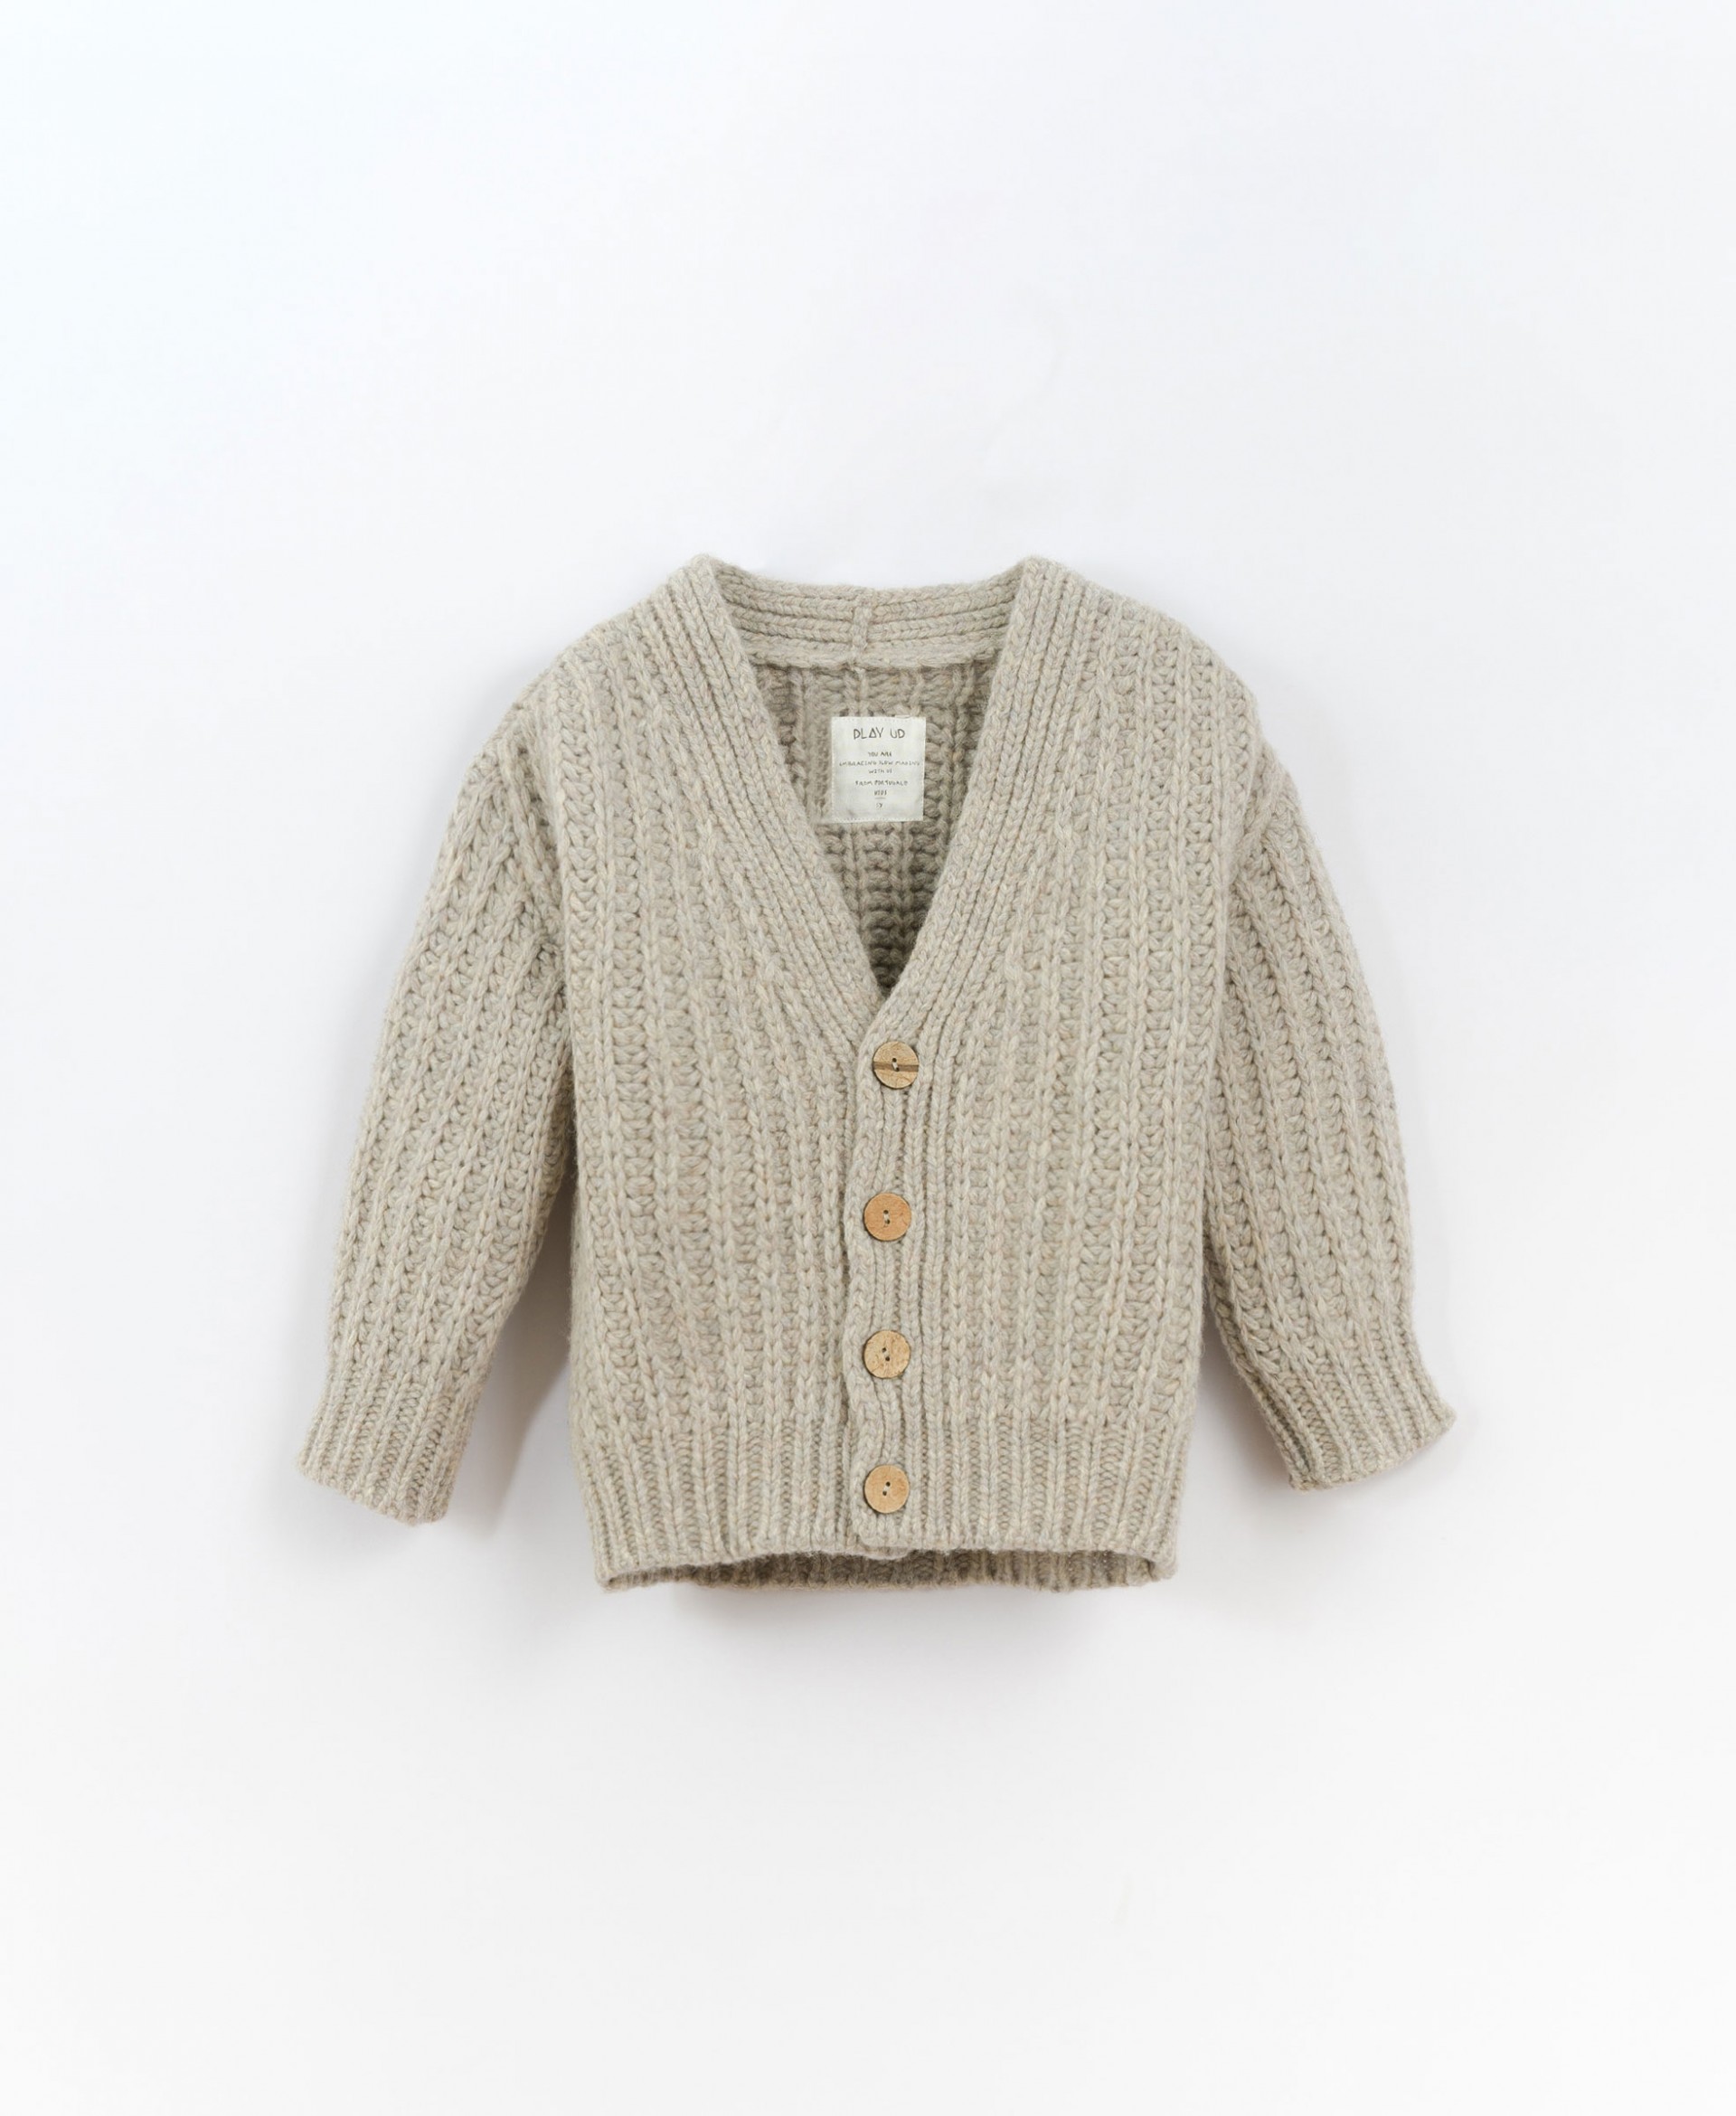 Casaco tricot com abertura de botões | Culinary